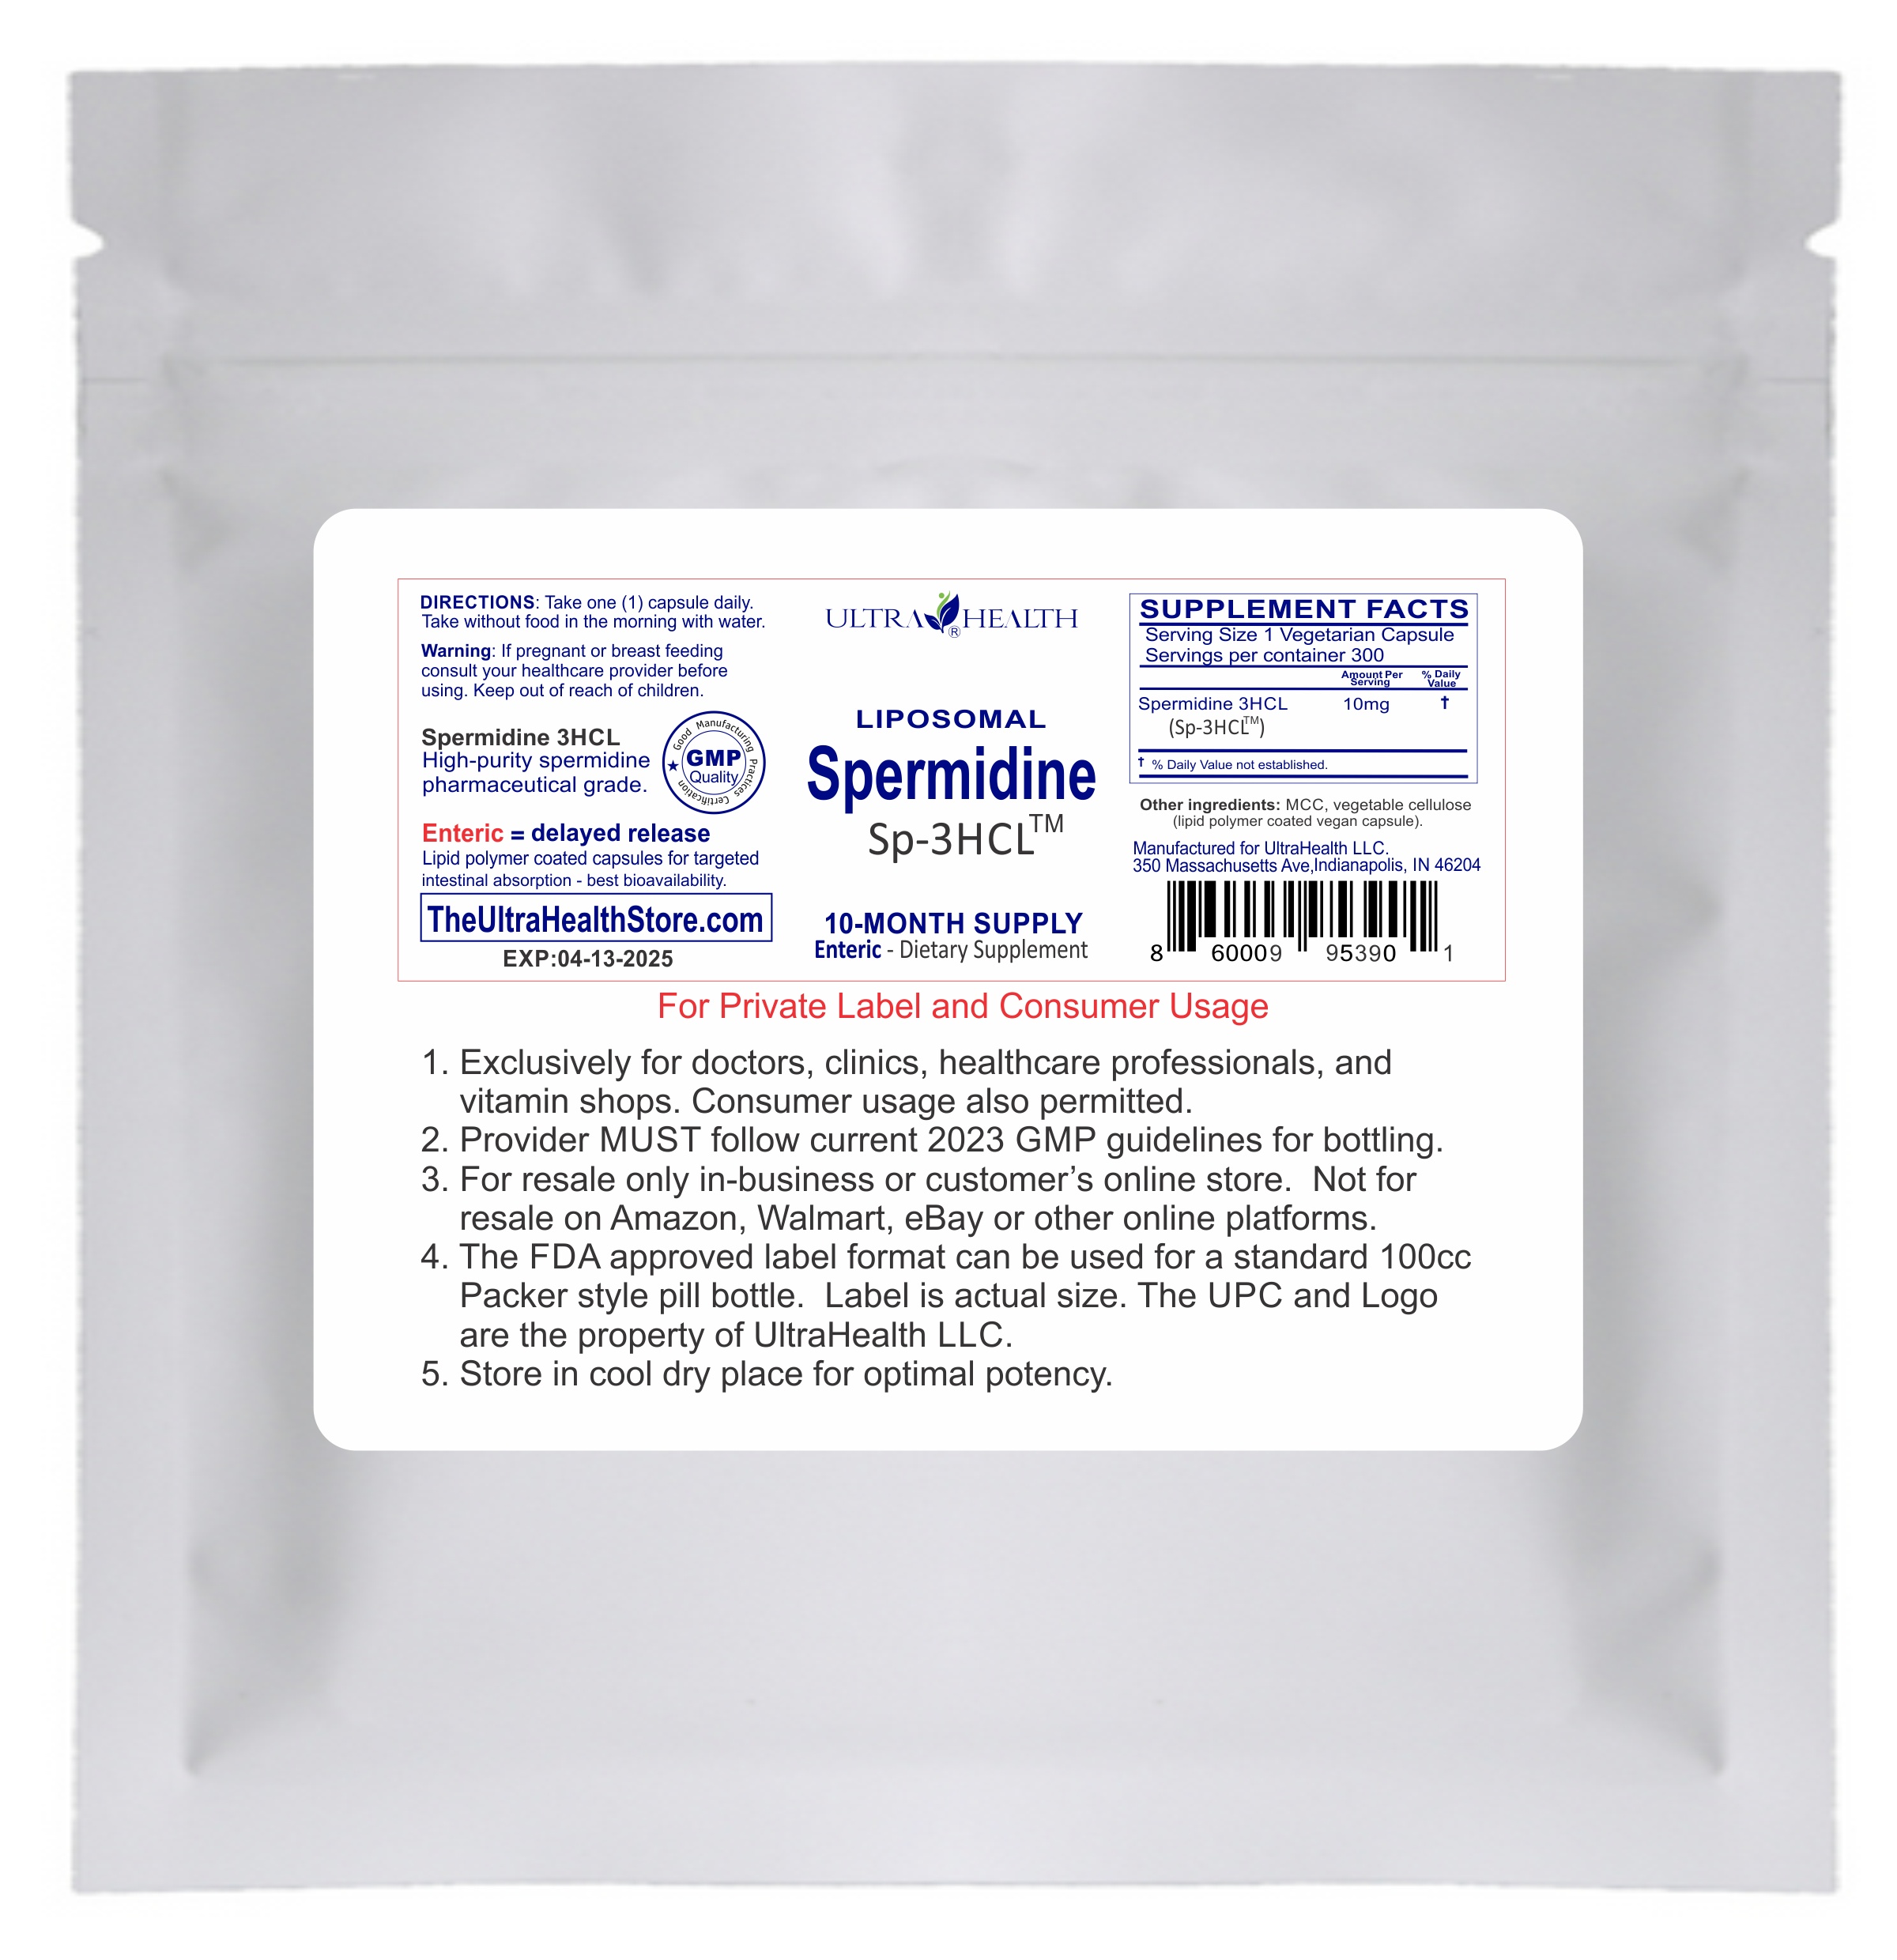 Best Spermidine Supplement - 10-month supply, 300E Liposomal